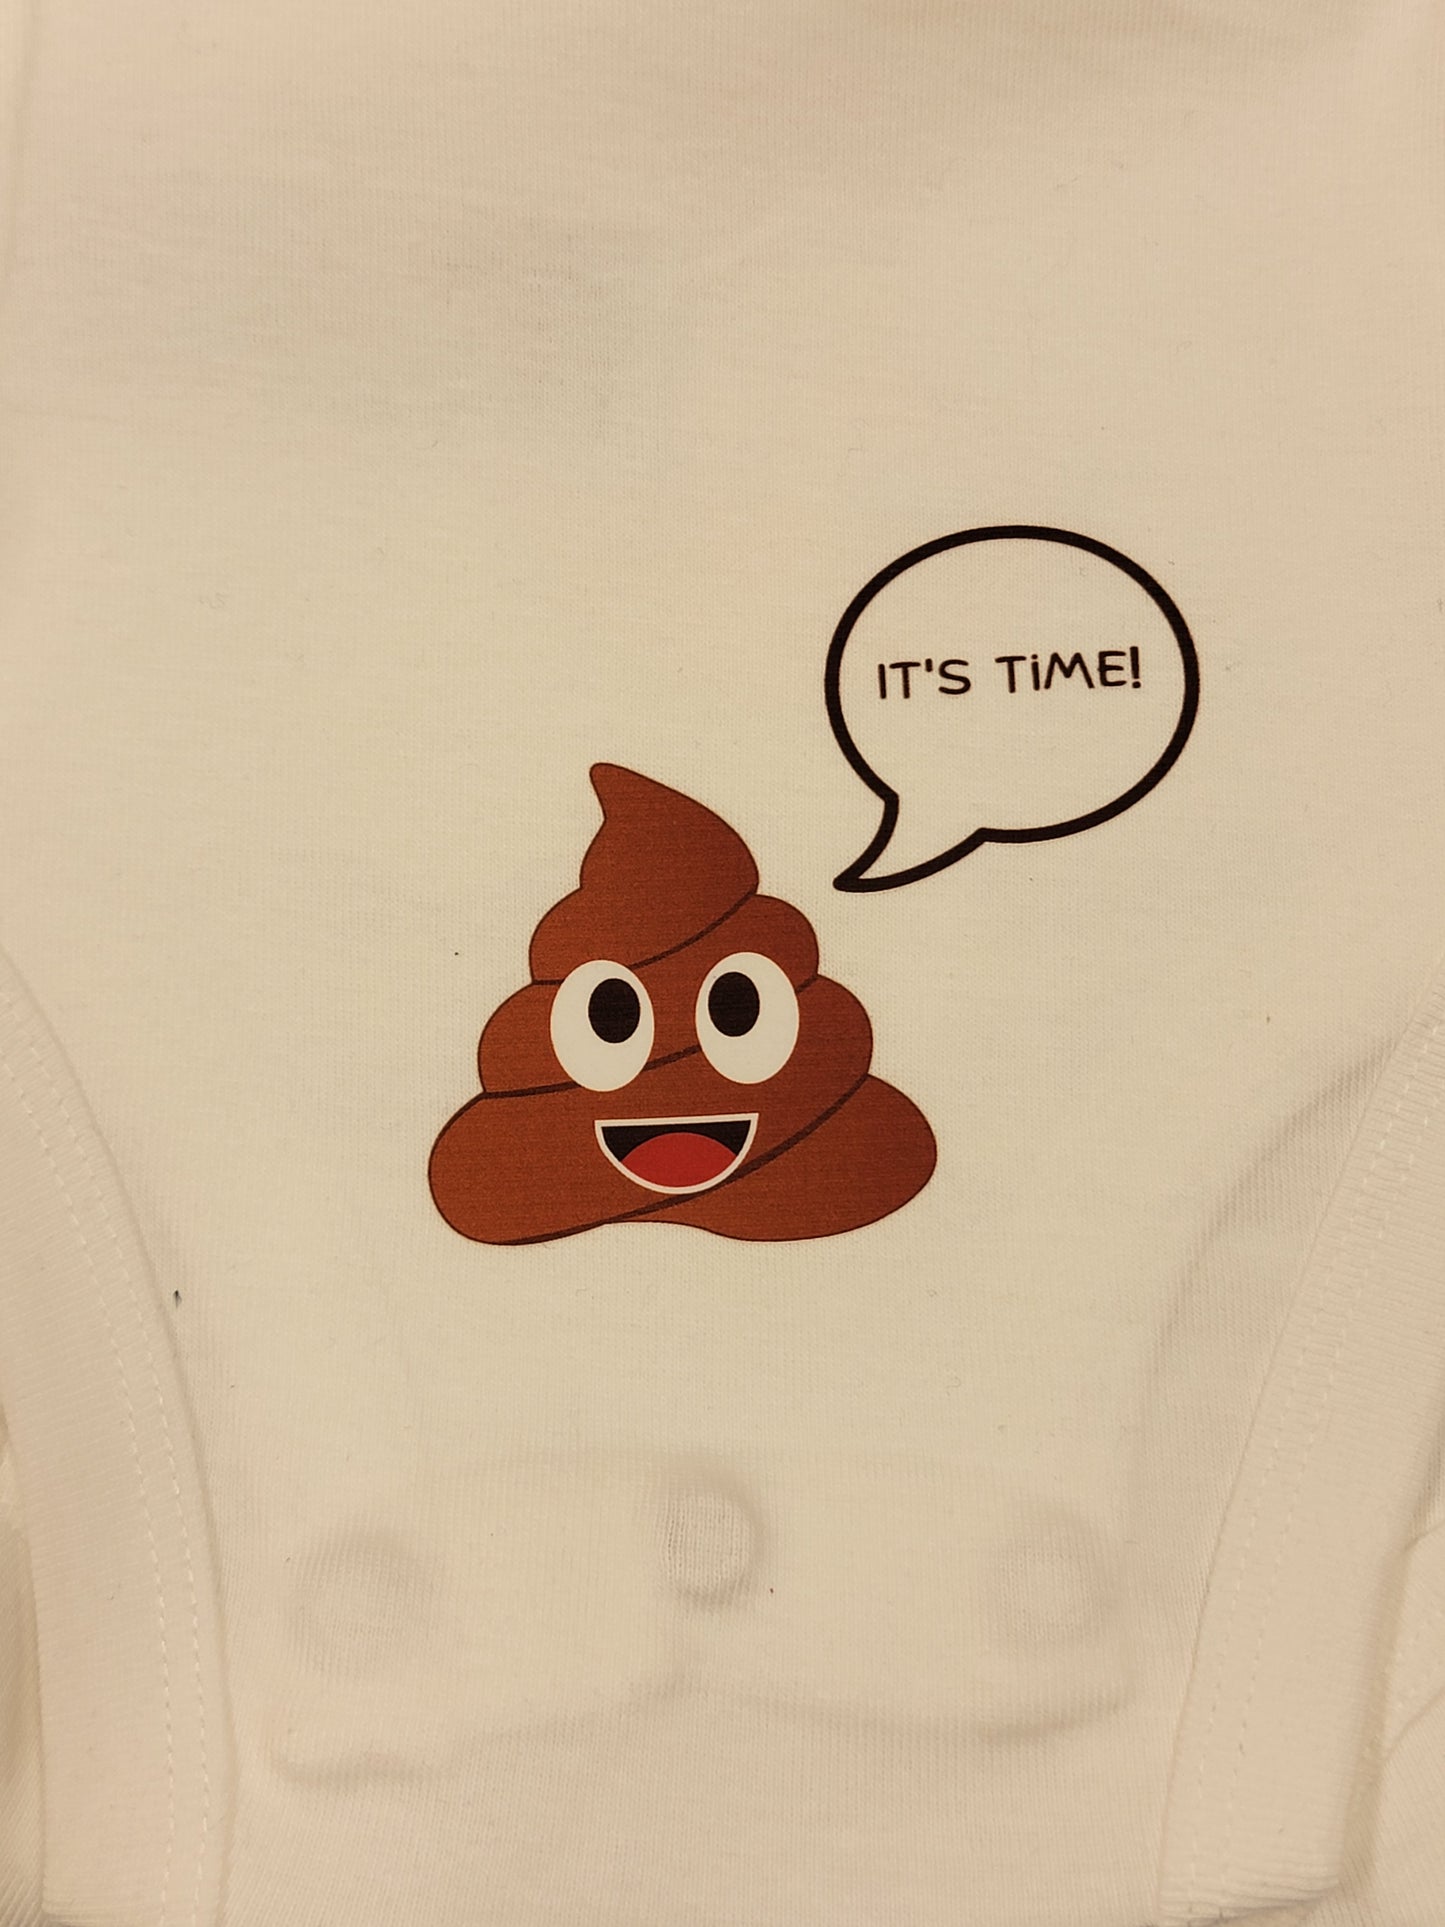 Poopie Onesies - For the Babies Who Love to Poop